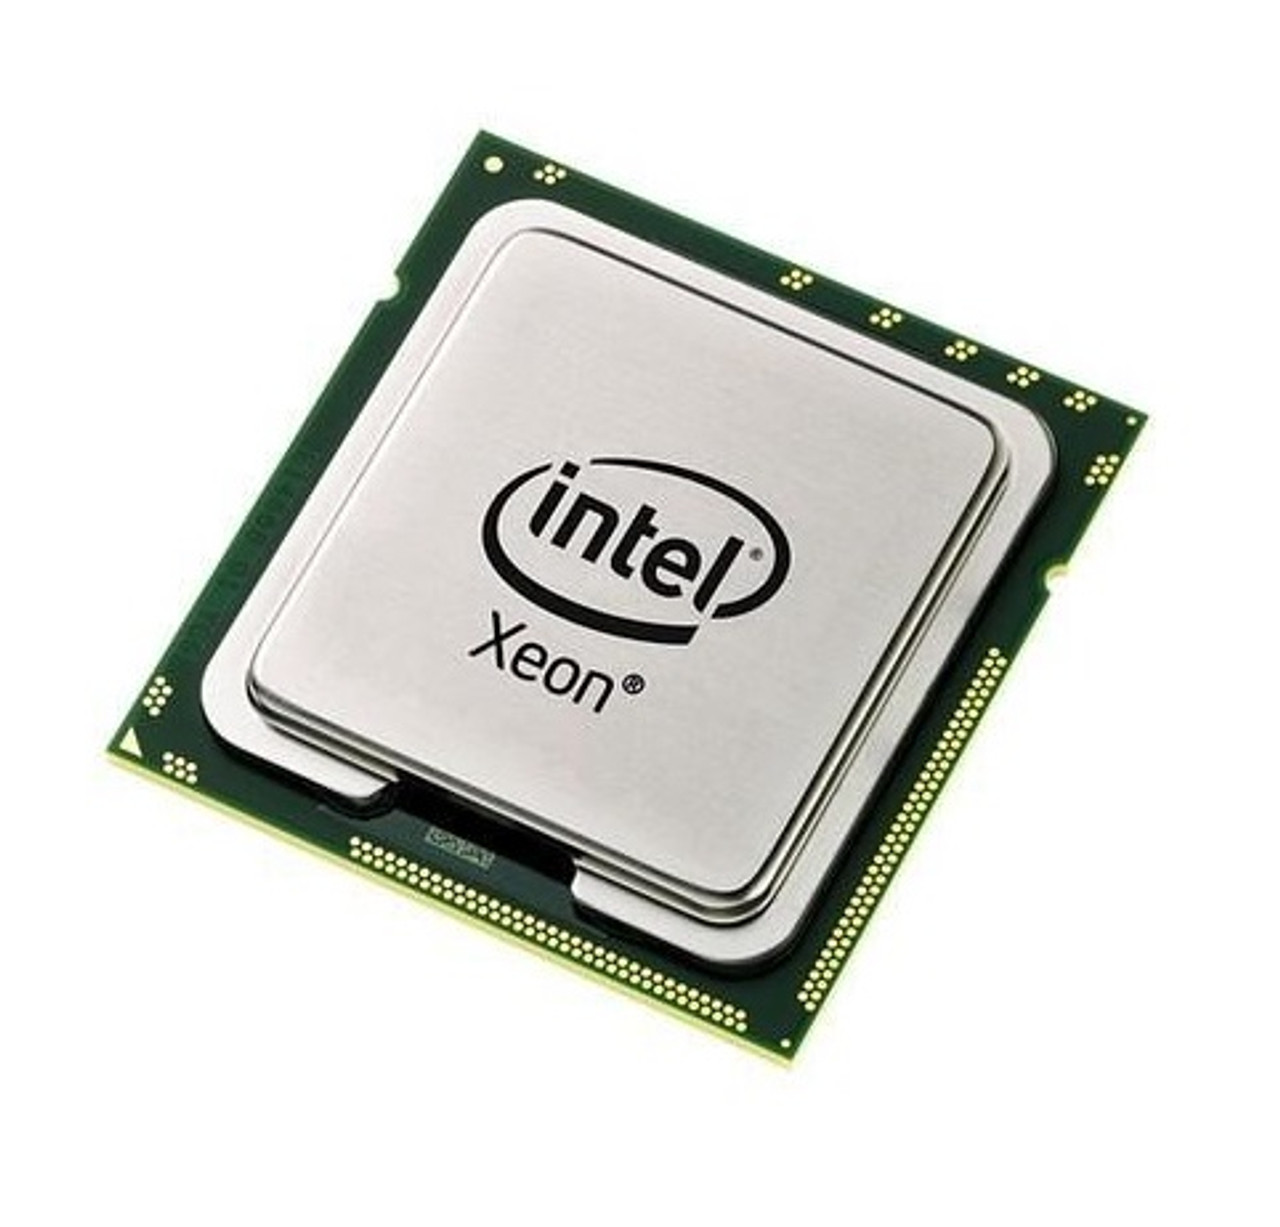 X3380 - Intel Xeon X3380 Quad Core 3.16GHz 1333MHz FSB 12MB L2 Cache Processor